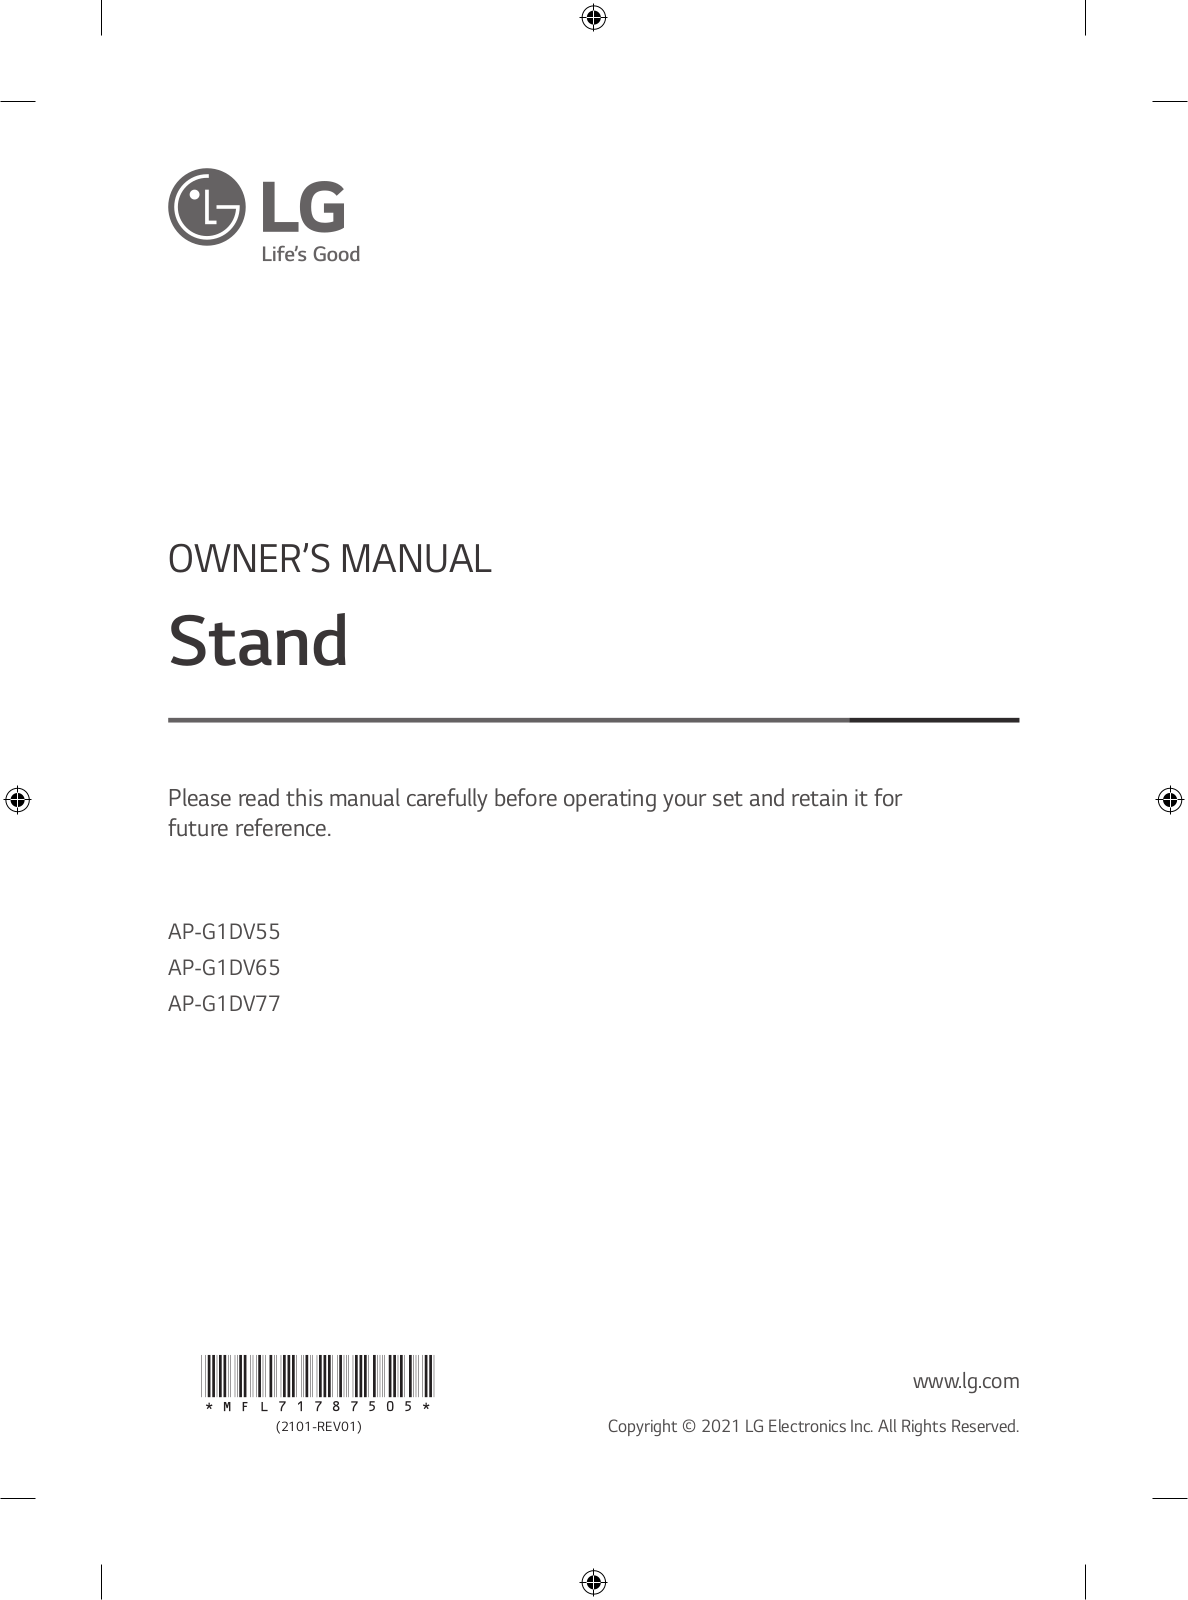 LG AP-G1DV77 Owner’s Manual